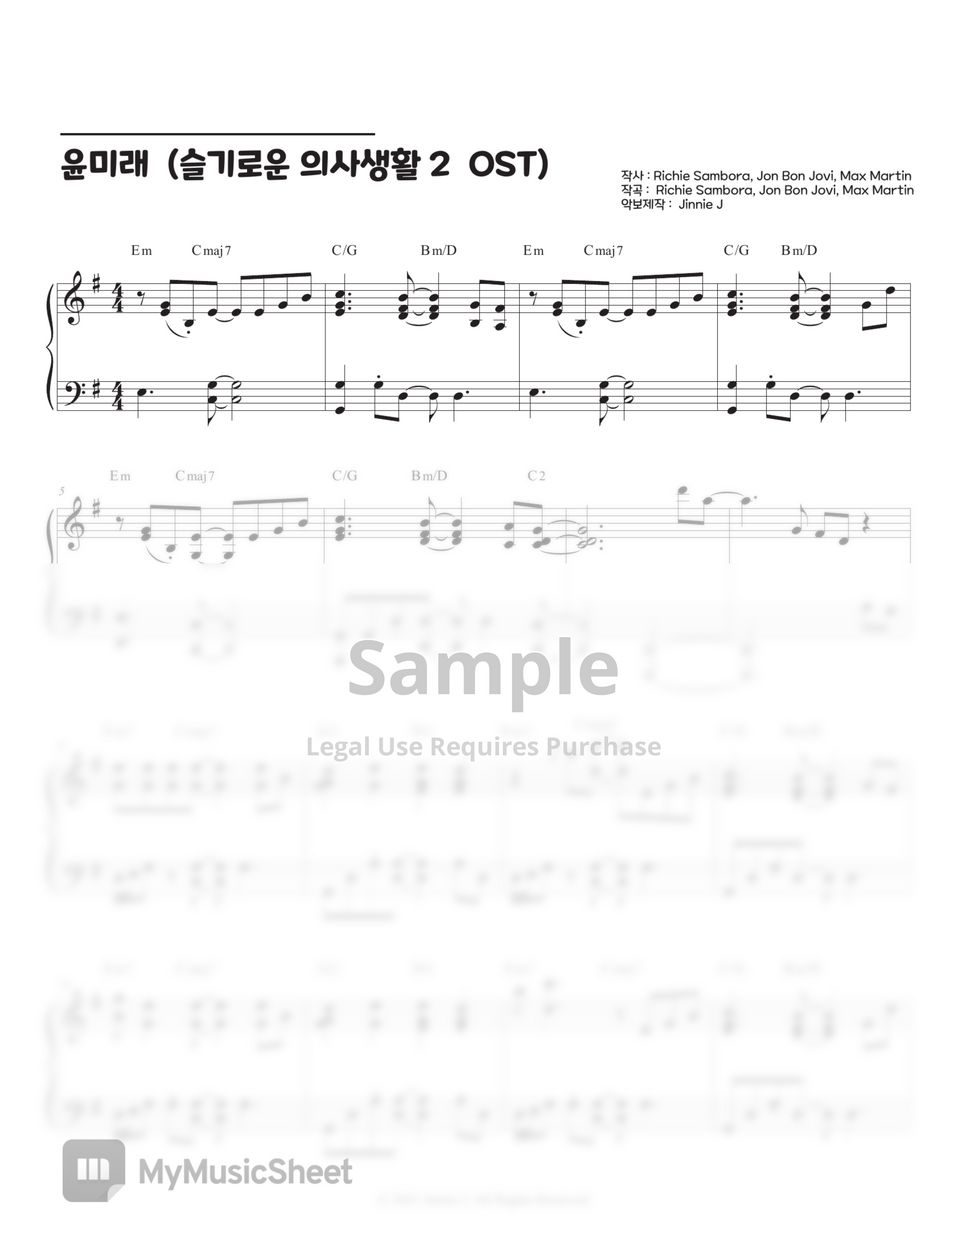 윤미래 (Yoon Mirae) - It's My Life (Hospital Playlist2 OST) by Jinnie J